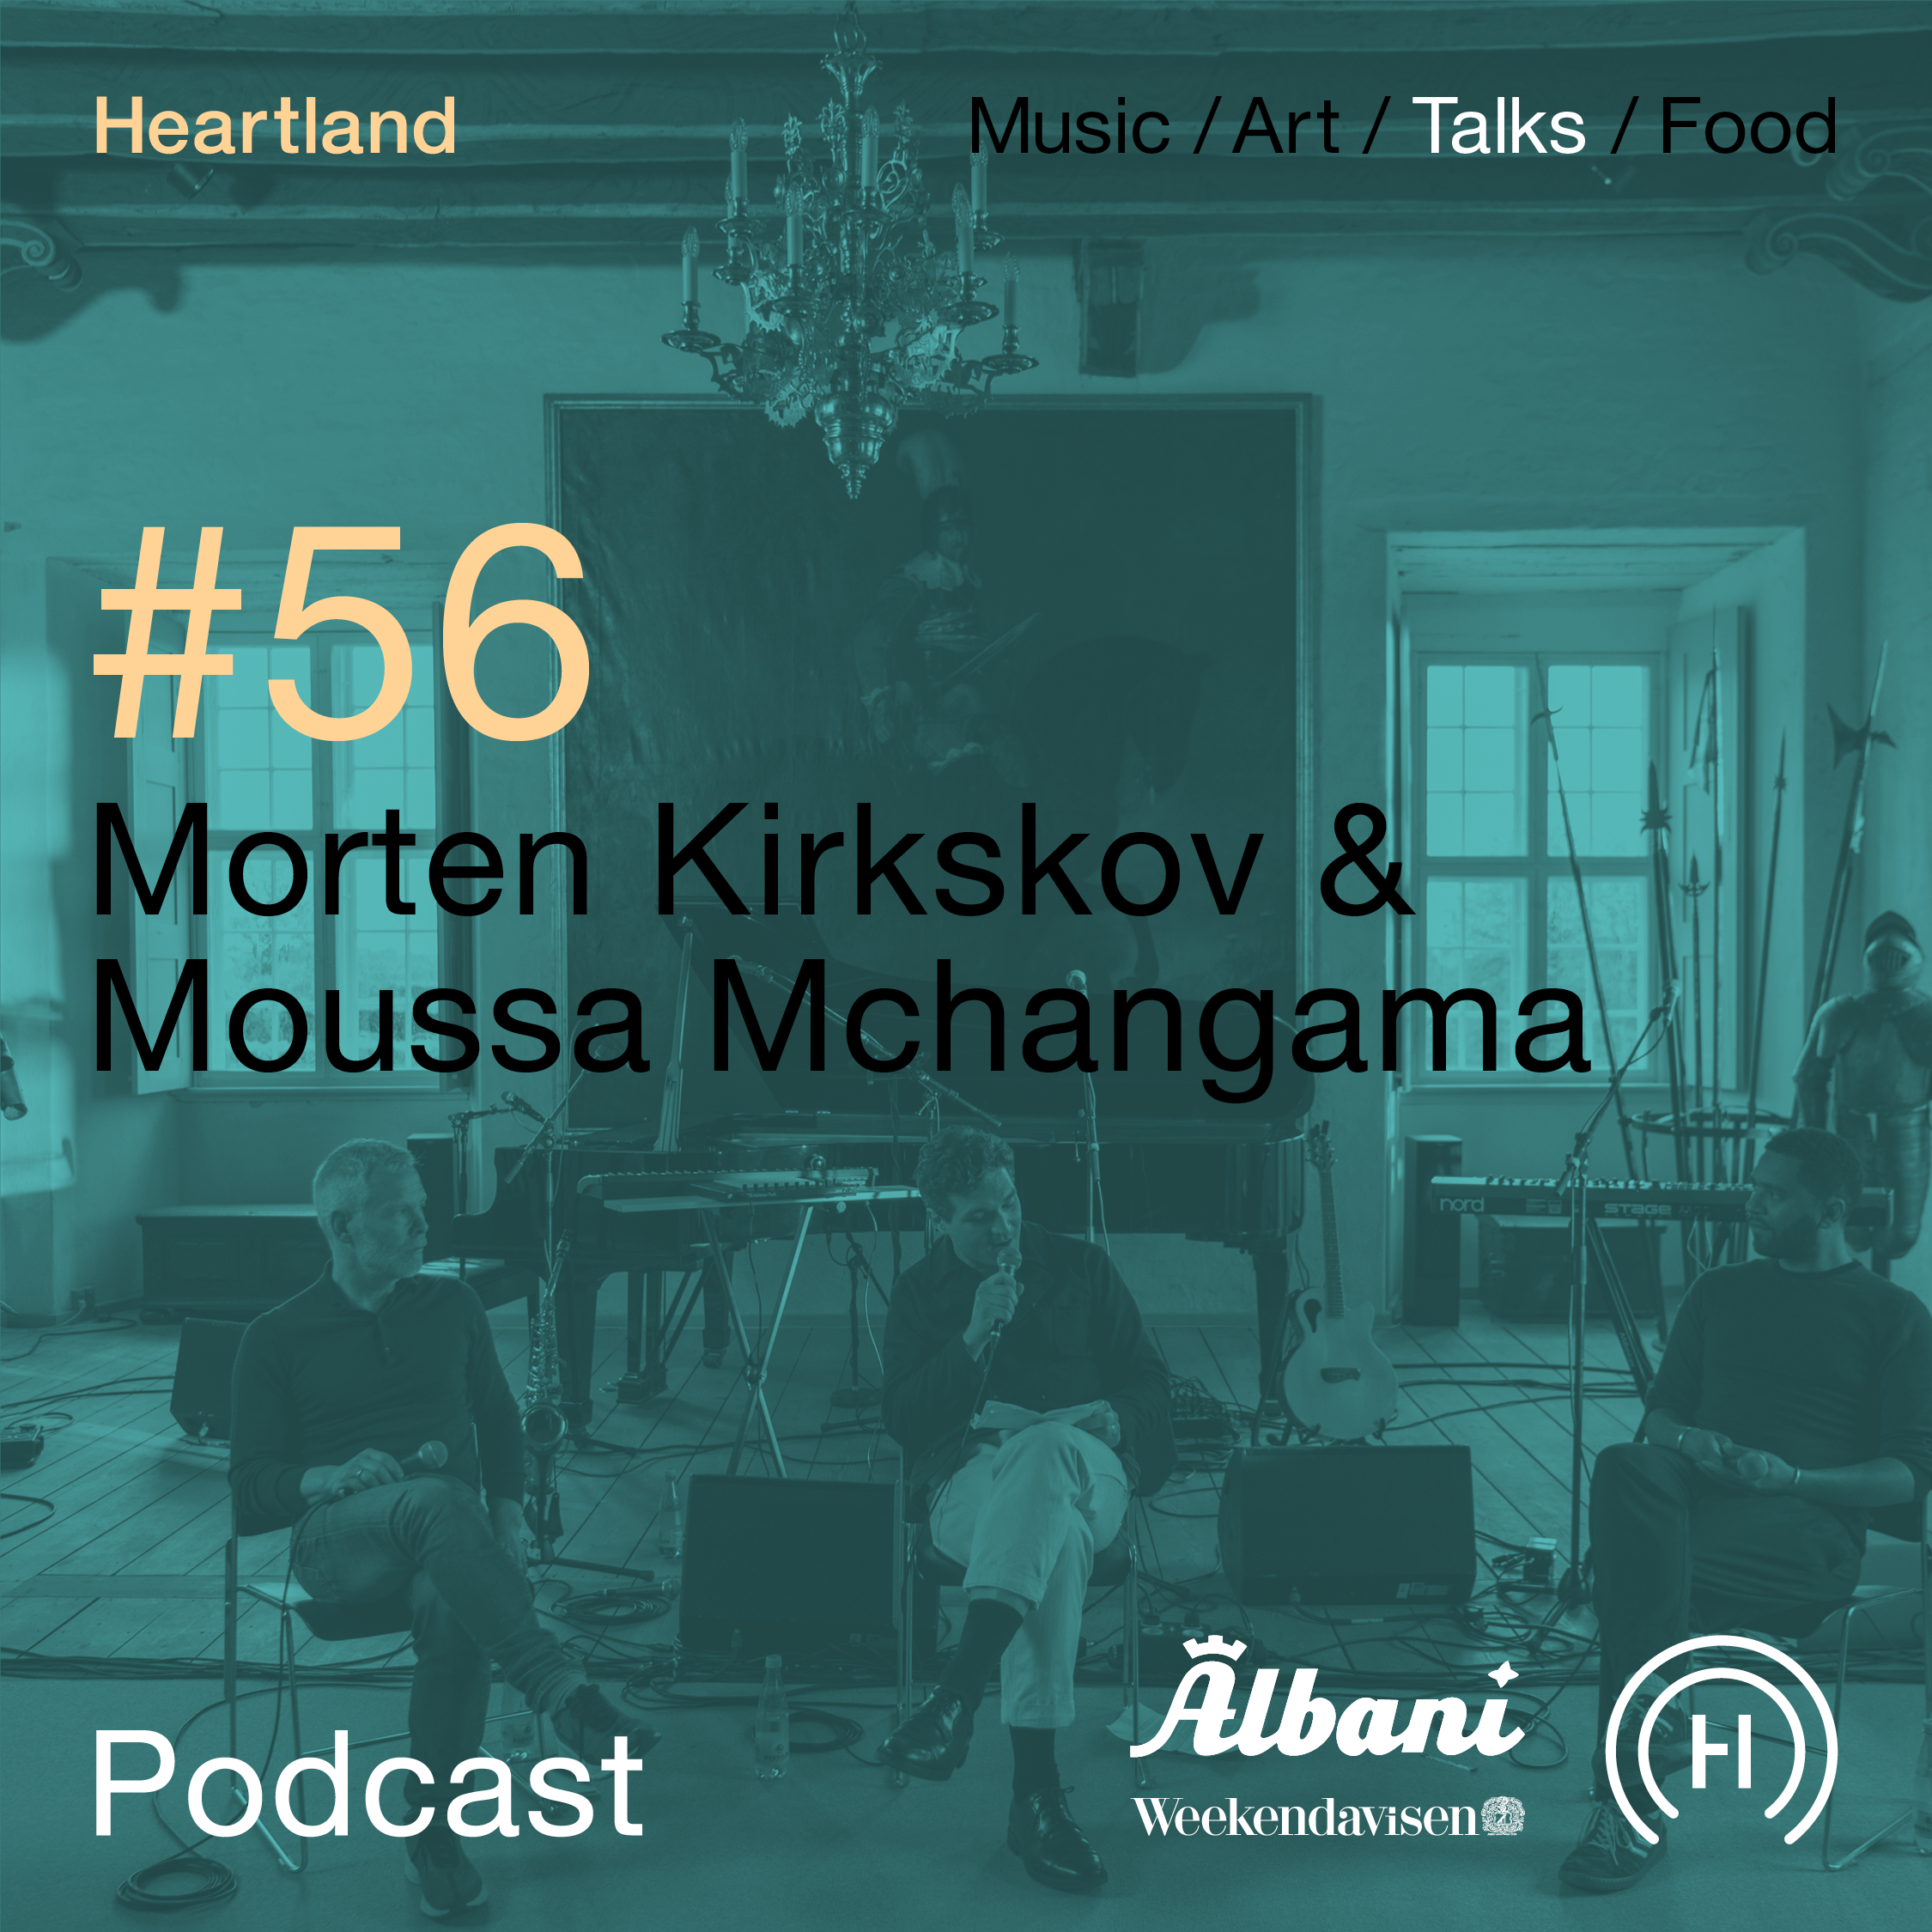 Billede af Heartland Festival Podcast Morten Kirkskov & Moussa Mchangama